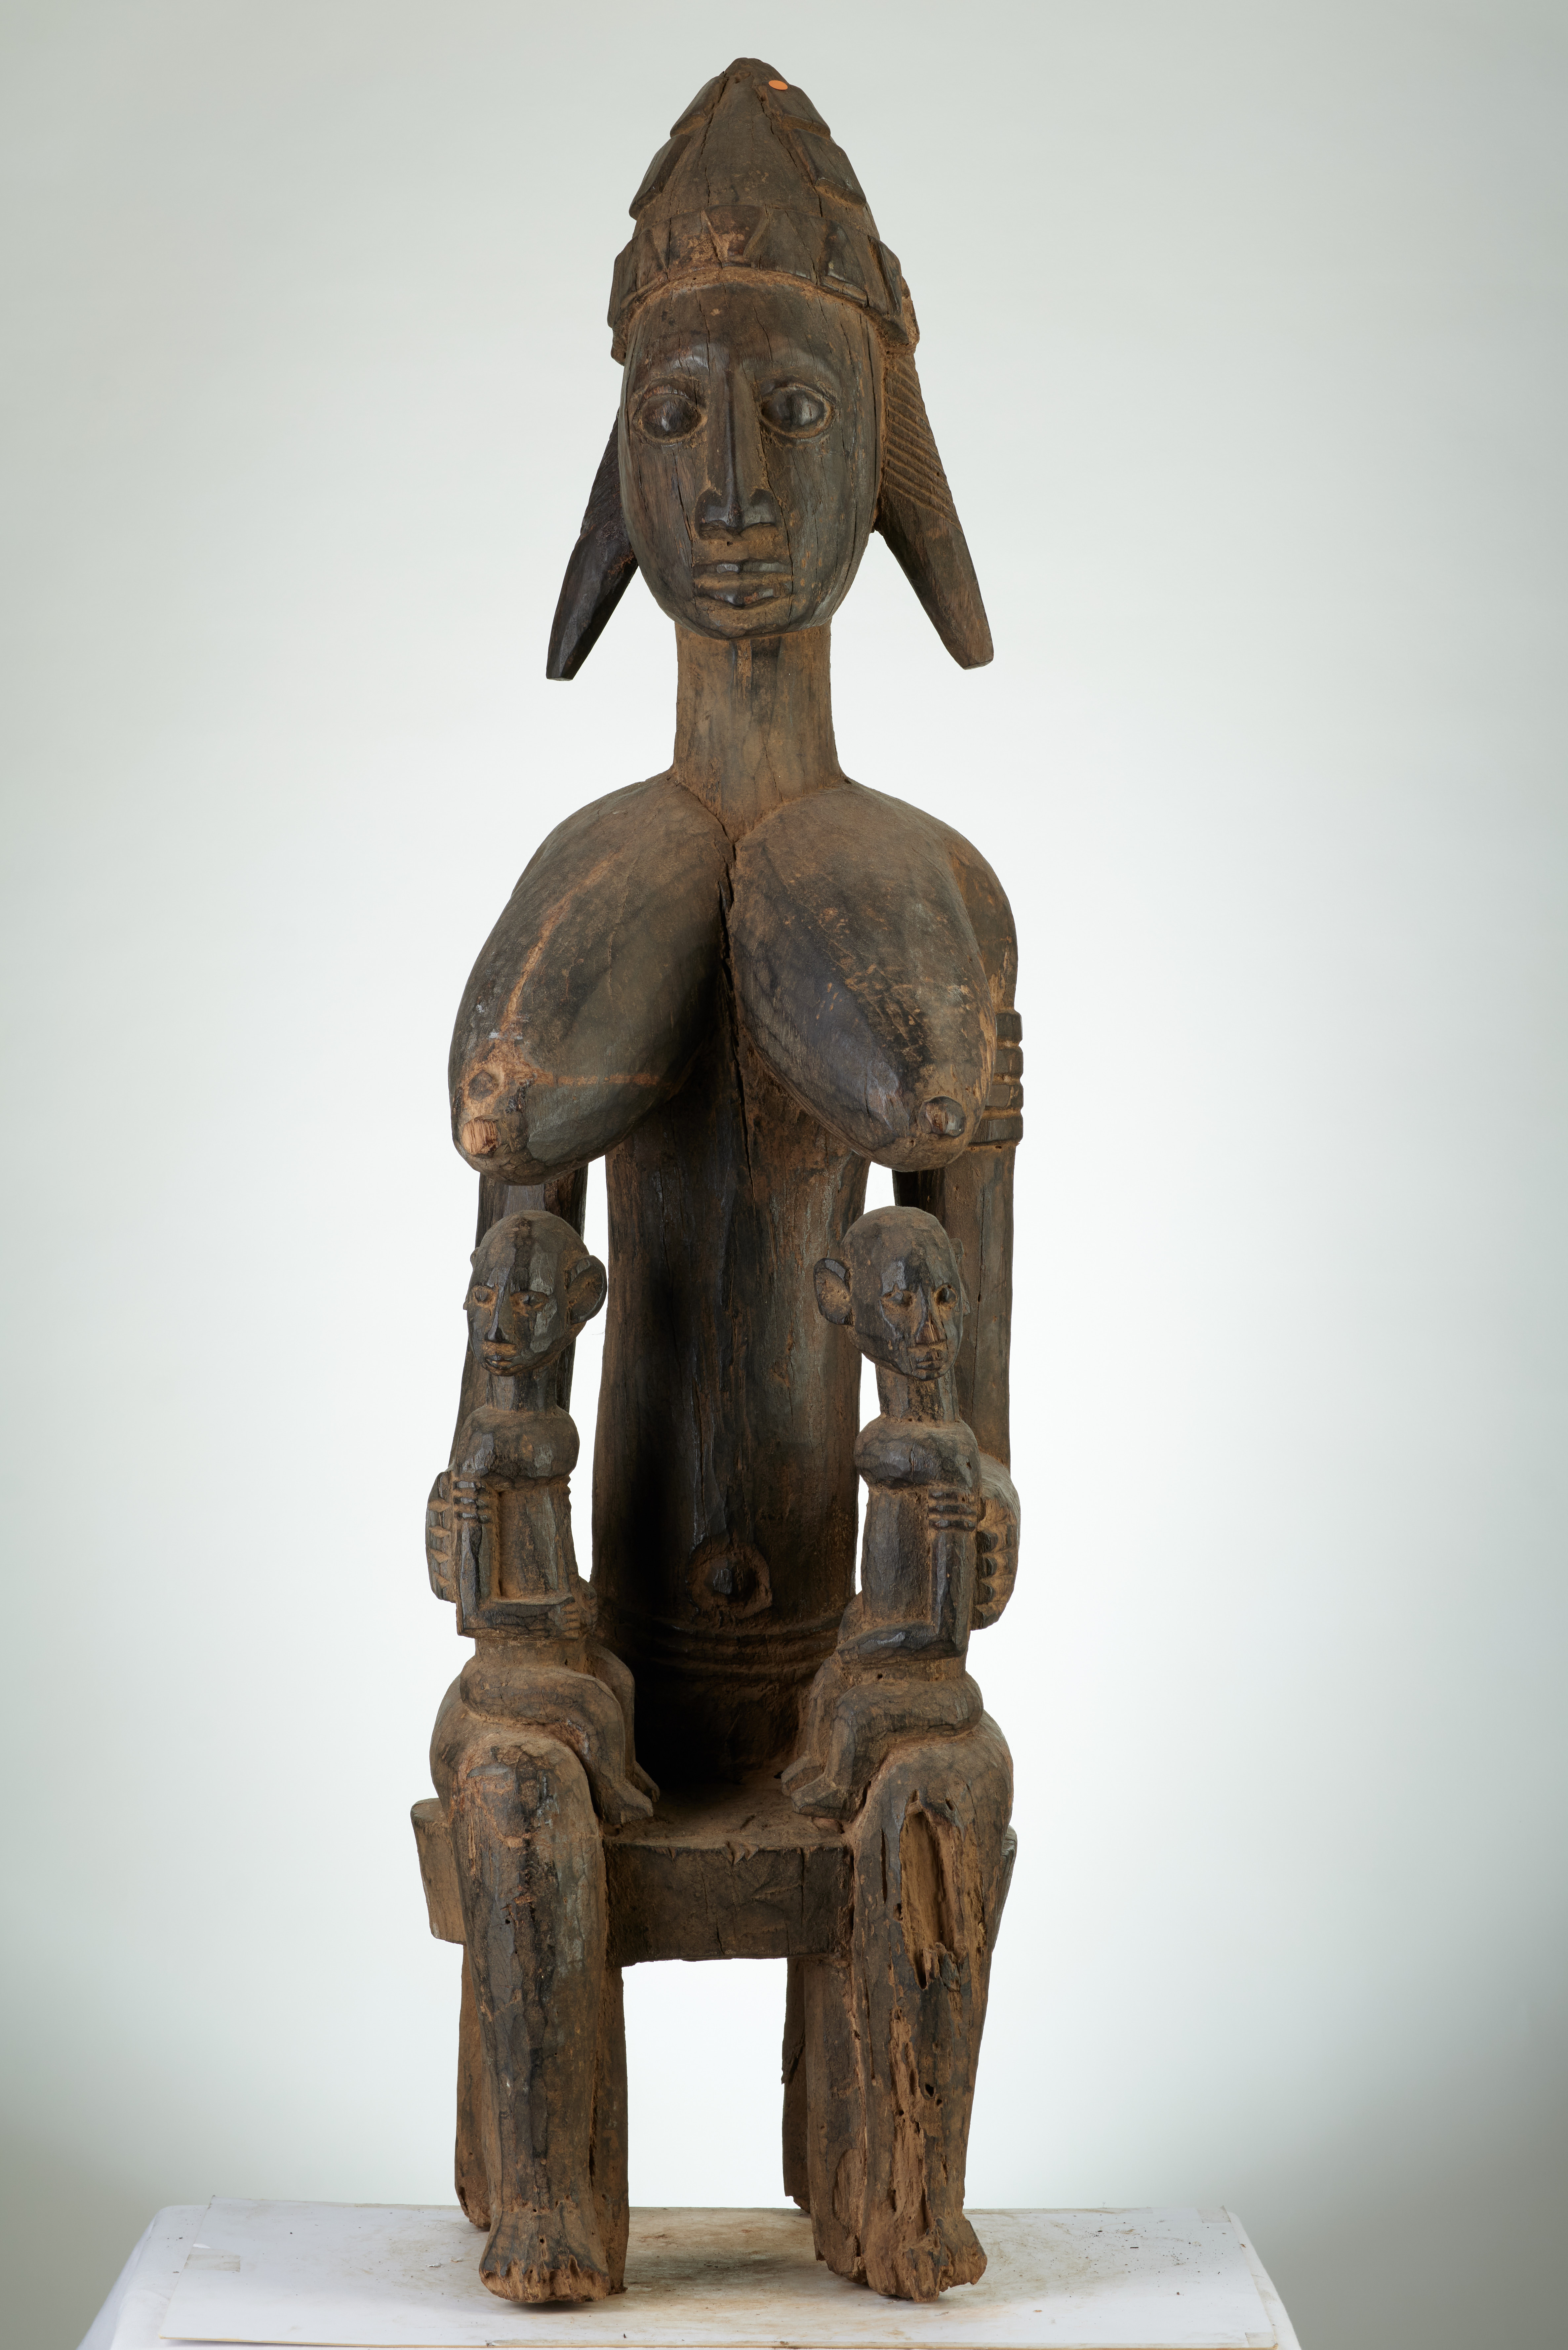 bambara (maternité assise ), d`afrique : MALI, statuette bambara (maternité assise ), masque ancien africain bambara (maternité assise ), art du MALI - Art Africain, collection privées Belgique. Statue africaine de la tribu des bambara (maternité assise ), provenant du MALI, 1877:Très belle et ancienne maternité Bambara. GUANDOUDOU reine des Bambara.Une ancêtre assise avec deux enfants sur les genoux.Elle arbore une coiffure enforme decrête et a des grands seins. La statue :Utilisée pour les fêtes de la societé GUAN.Des sacrifices leur étaient offerts.Statue érodée datant du 18eme sc.(Simon du chastel de la Howarderie)

Heel oud en mooi Bambara moederschap.GUANDOUDOU koningin van de bambaras.Een neerzittende voorouder
met twee kinderen op haar knieën.Haartooi in vorm van een kam en grote borsten.Het beeld werd gebruikt tijdens de GUAN cérémonies.Ze kreeg offers.Het beeld is geerodeerd en dateert uit de 18de eeuw.. art,culture,masque,statue,statuette,pot,ivoire,exposition,expo,masque original,masques,statues,statuettes,pots,expositions,expo,masques originaux,collectionneur d`art,art africain,culture africaine,masque africain,statue africaine,statuette africaine,pot africain,ivoire africain,exposition africain,expo africain,masque origina africainl,masques africains,statues africaines,statuettes africaines,pots africains,expositions africaines,expo africaines,masques originaux  africains,collectionneur d`art africain